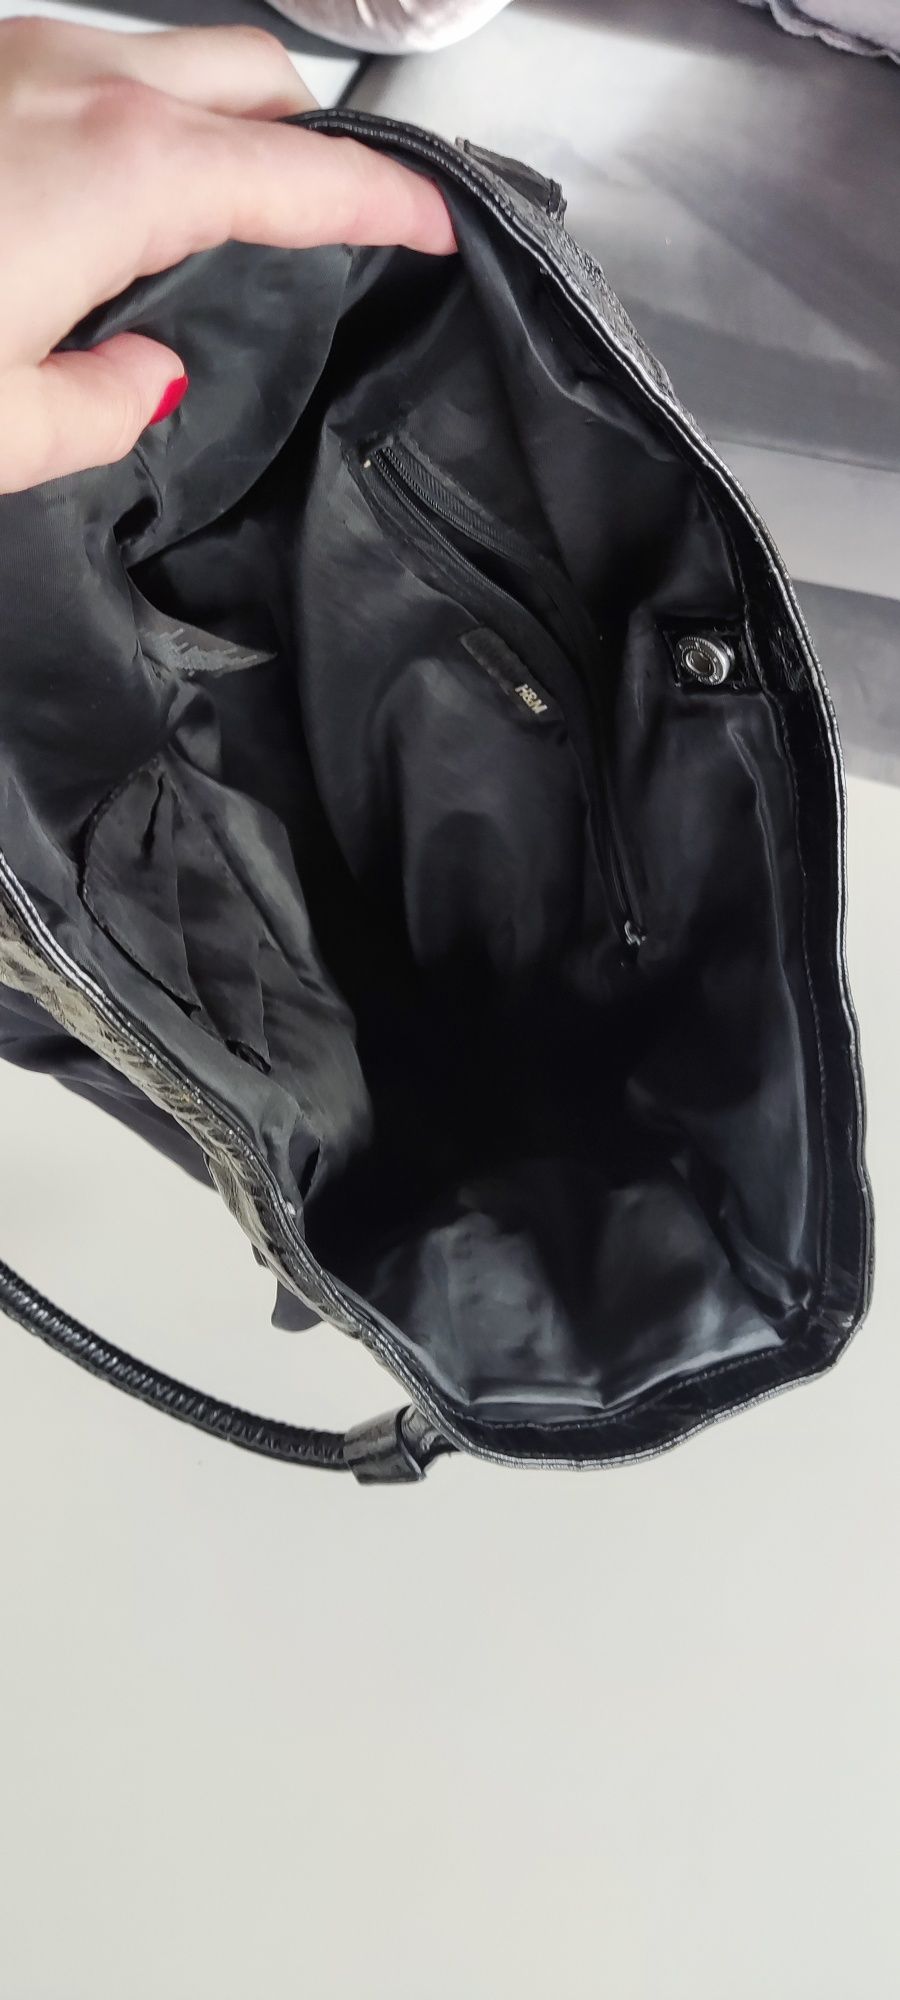 Czarna torebka H&M, lakierowane wstawki.